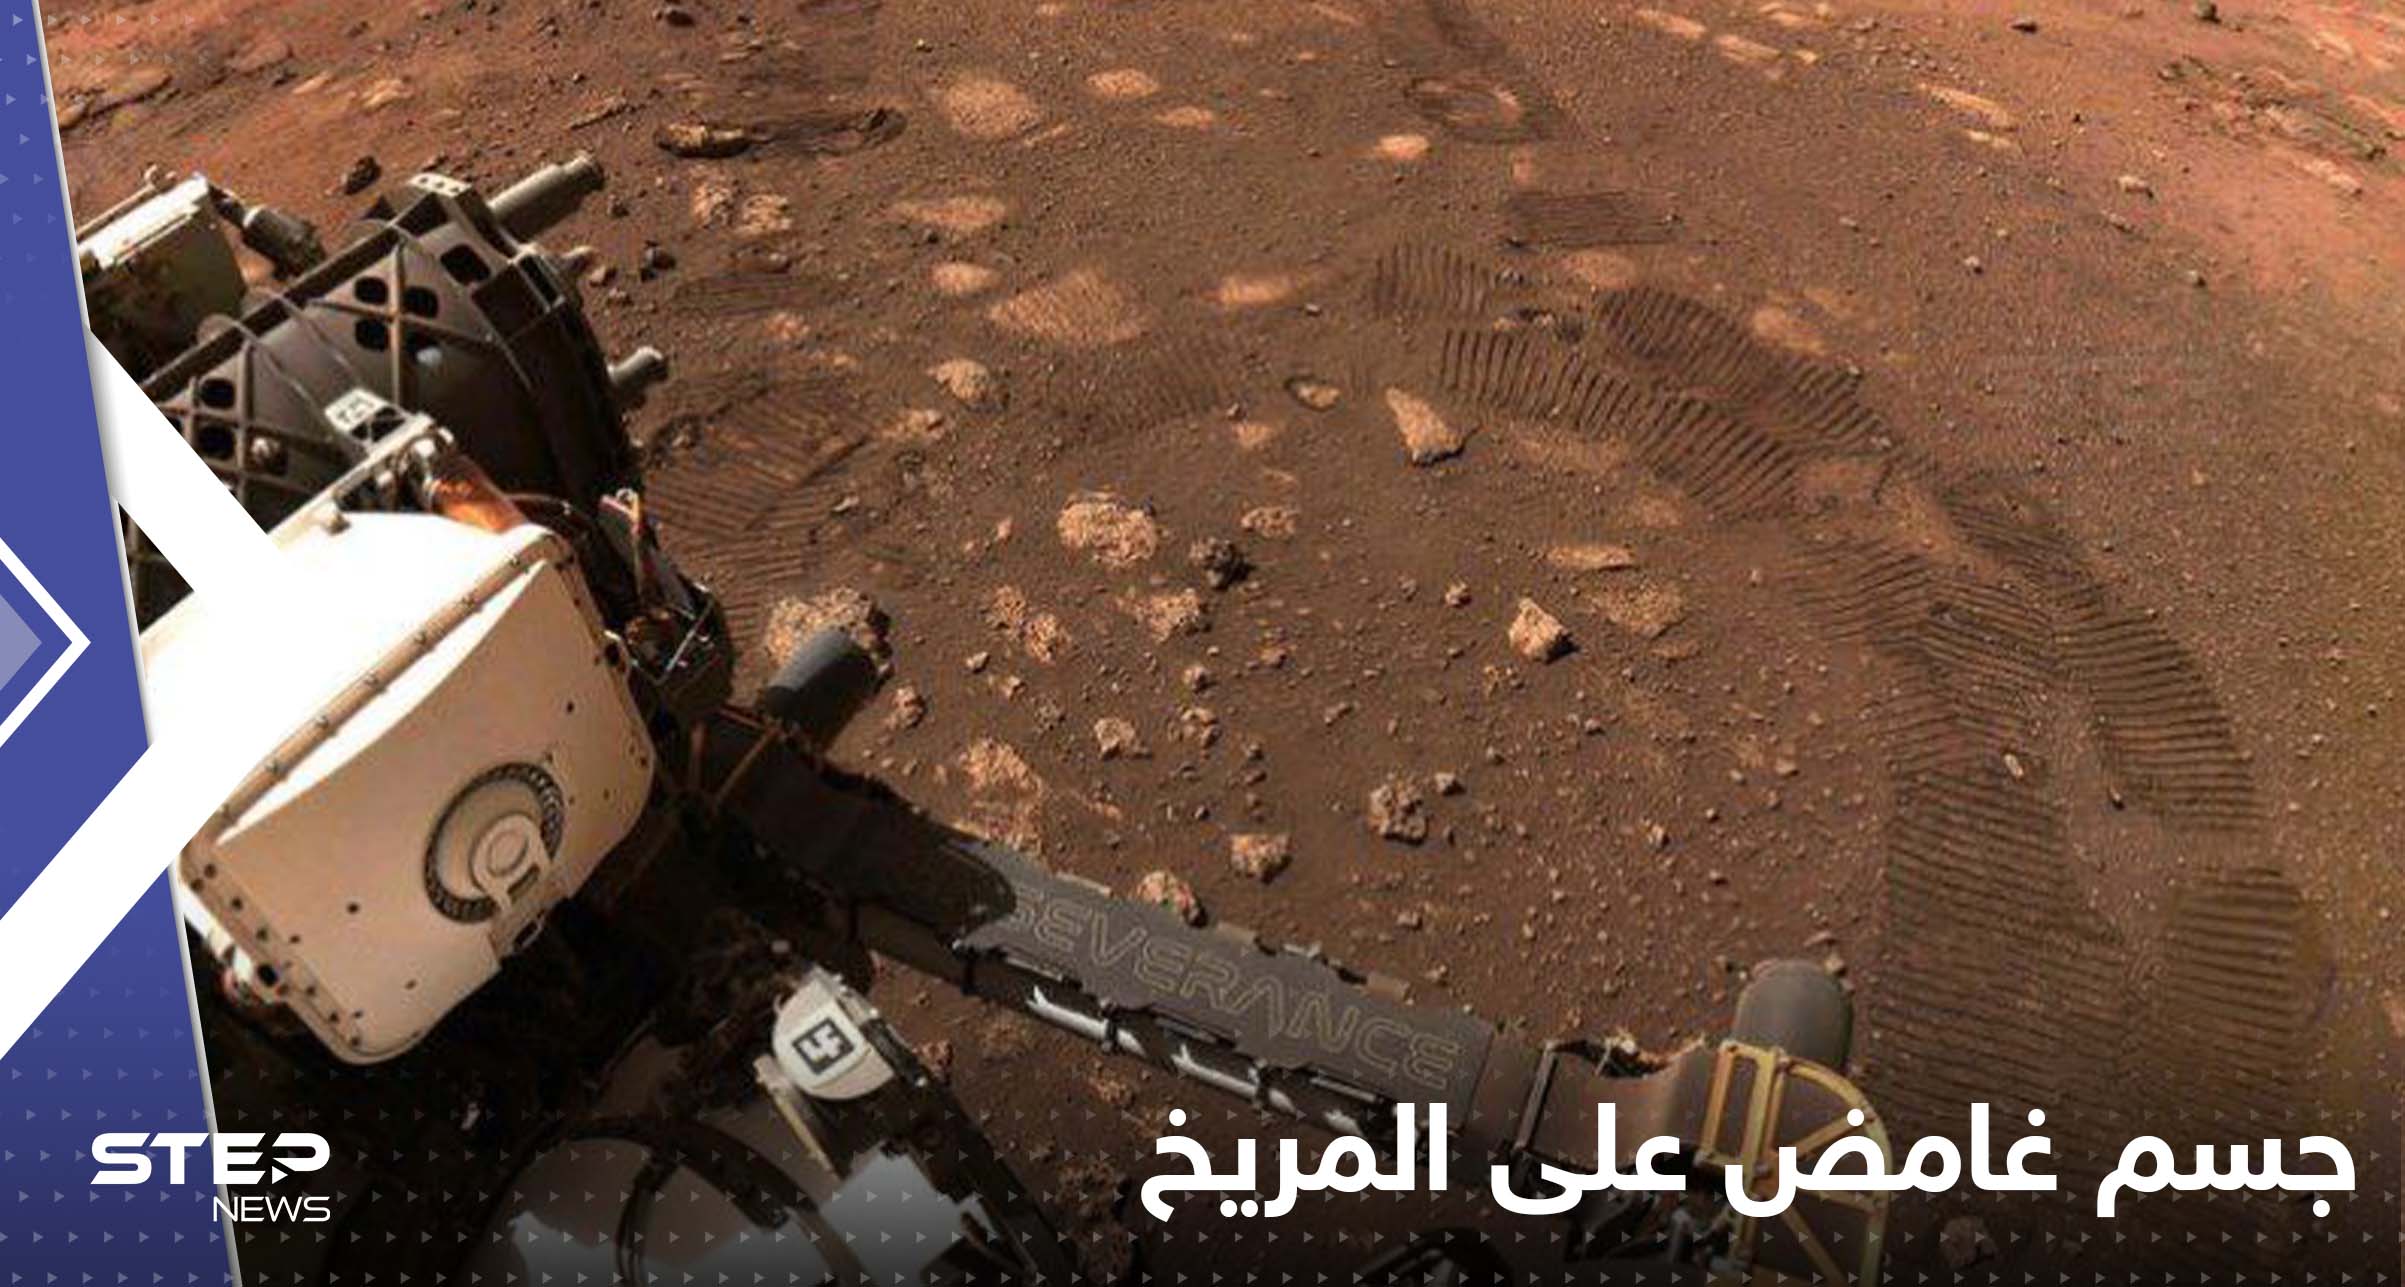 شاهد|| رصد جسم غامض متشابك على المريخ يثير حيرة ناسا وعلماء يعلقون